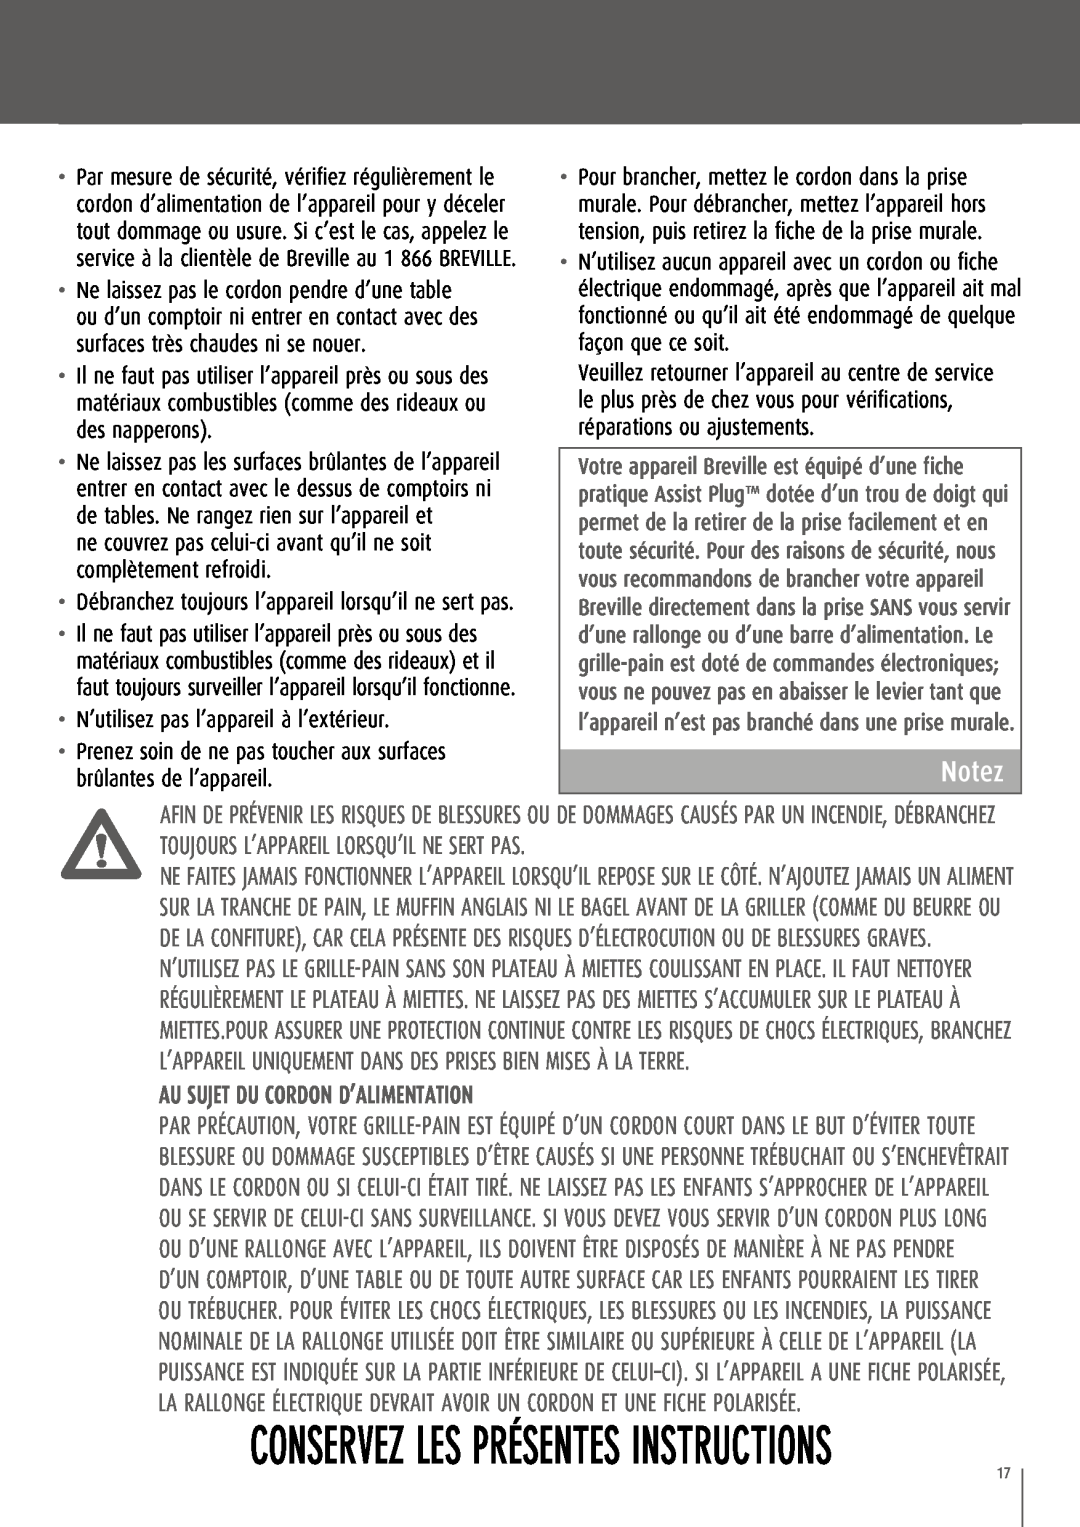 Breville CT70XL/A manual Conservez Les Présentes Instructions, Notez, Au sujet du cordon d’alimentation 